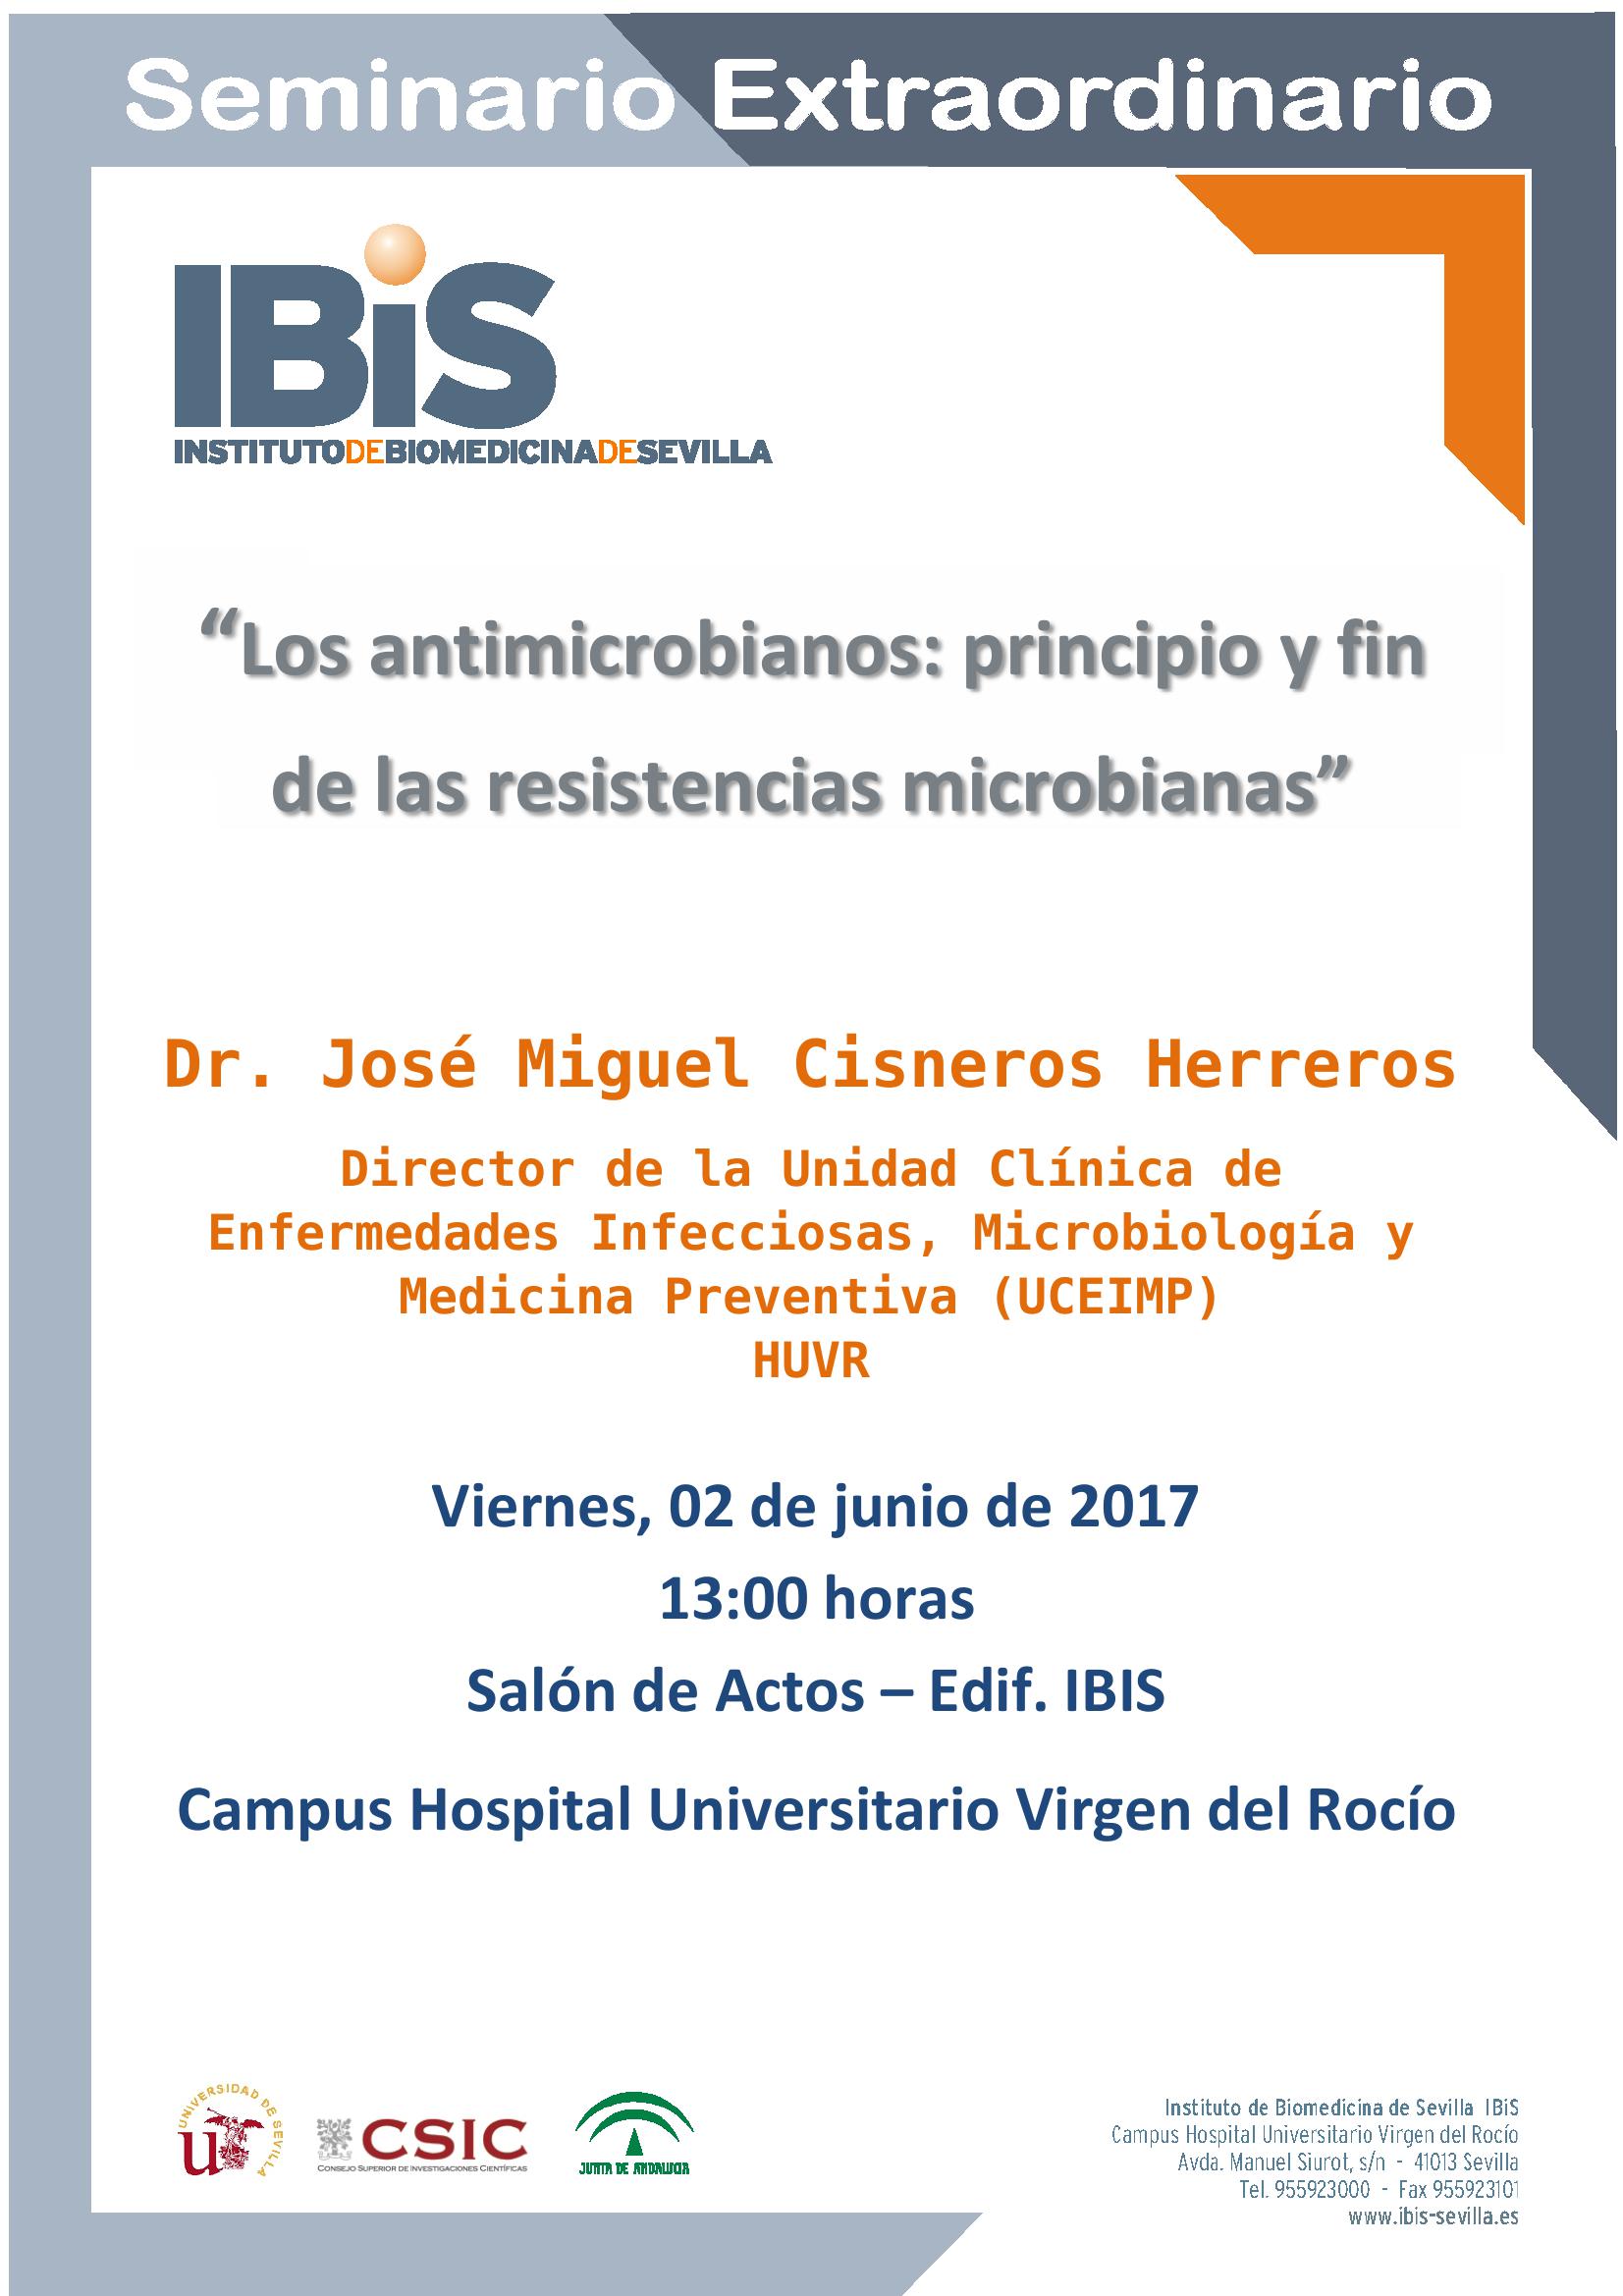 Poster: Los antimicrobianos: principio y fin de las resistencias microbianas